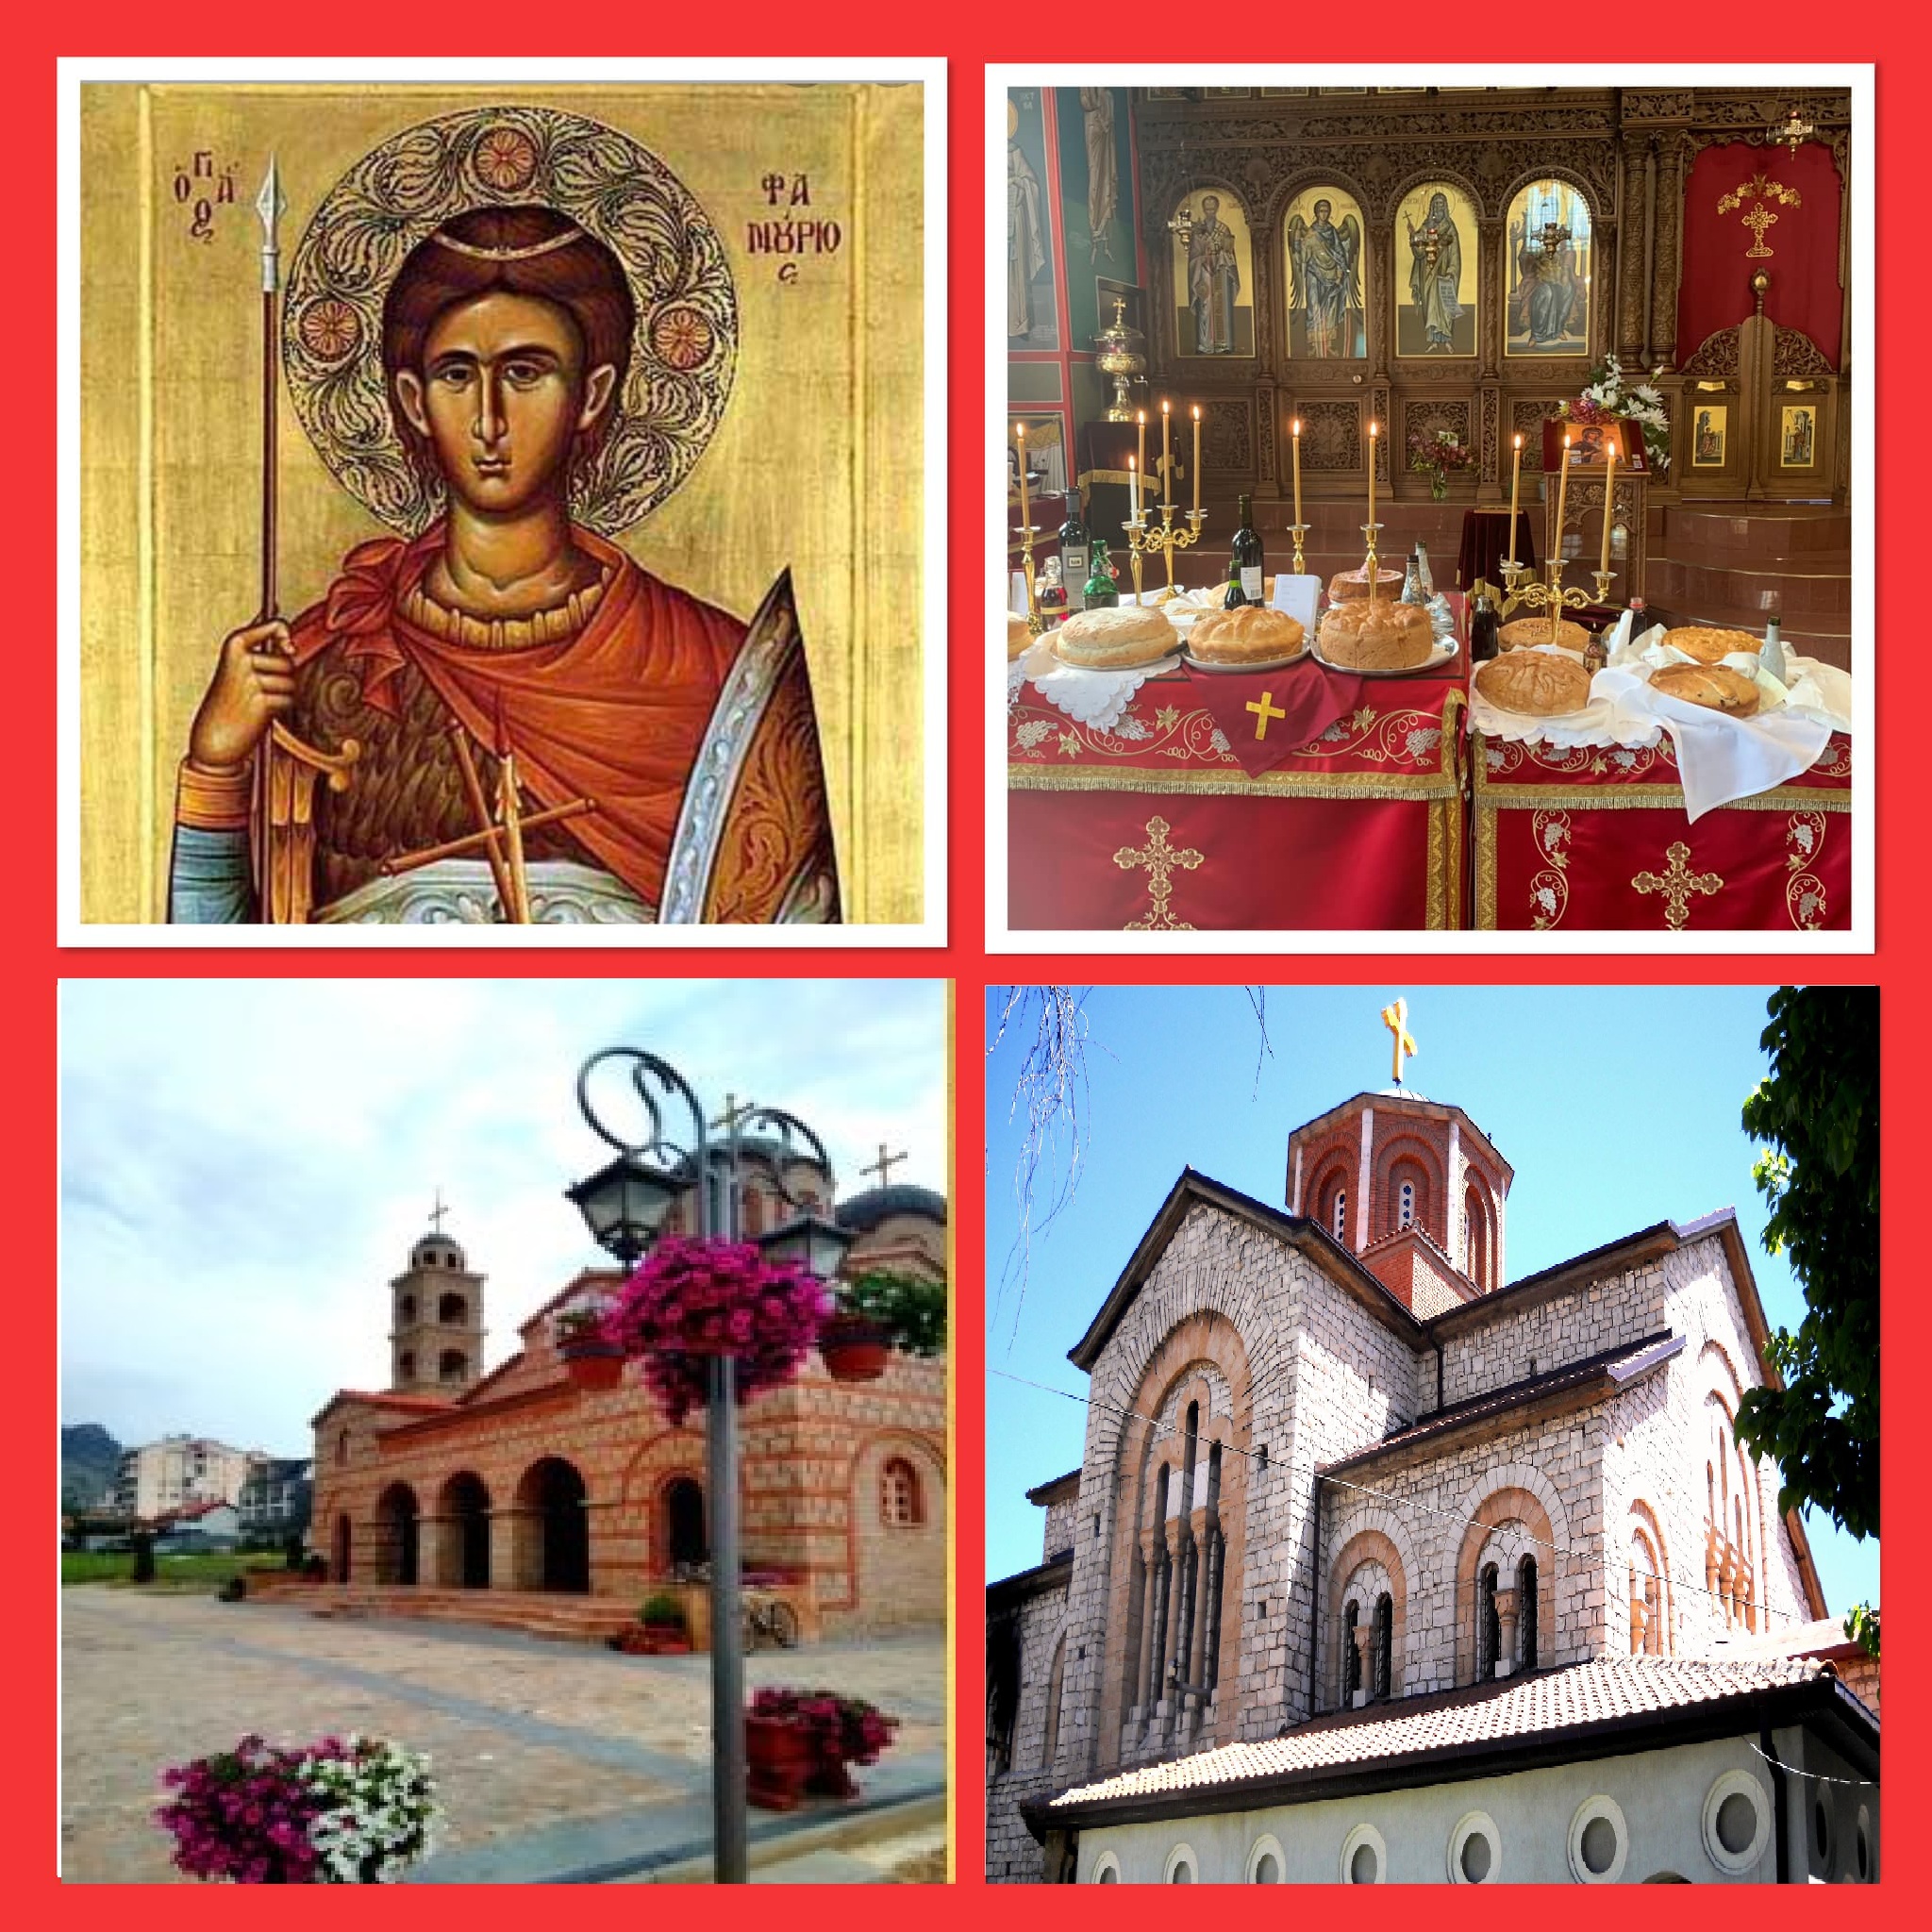 ЗА ЗДРАВЈЕ И СПАСЕНИЕ: Граѓаните ќе месат “фануропита” во чест на претстојниот празник св.Фануриј